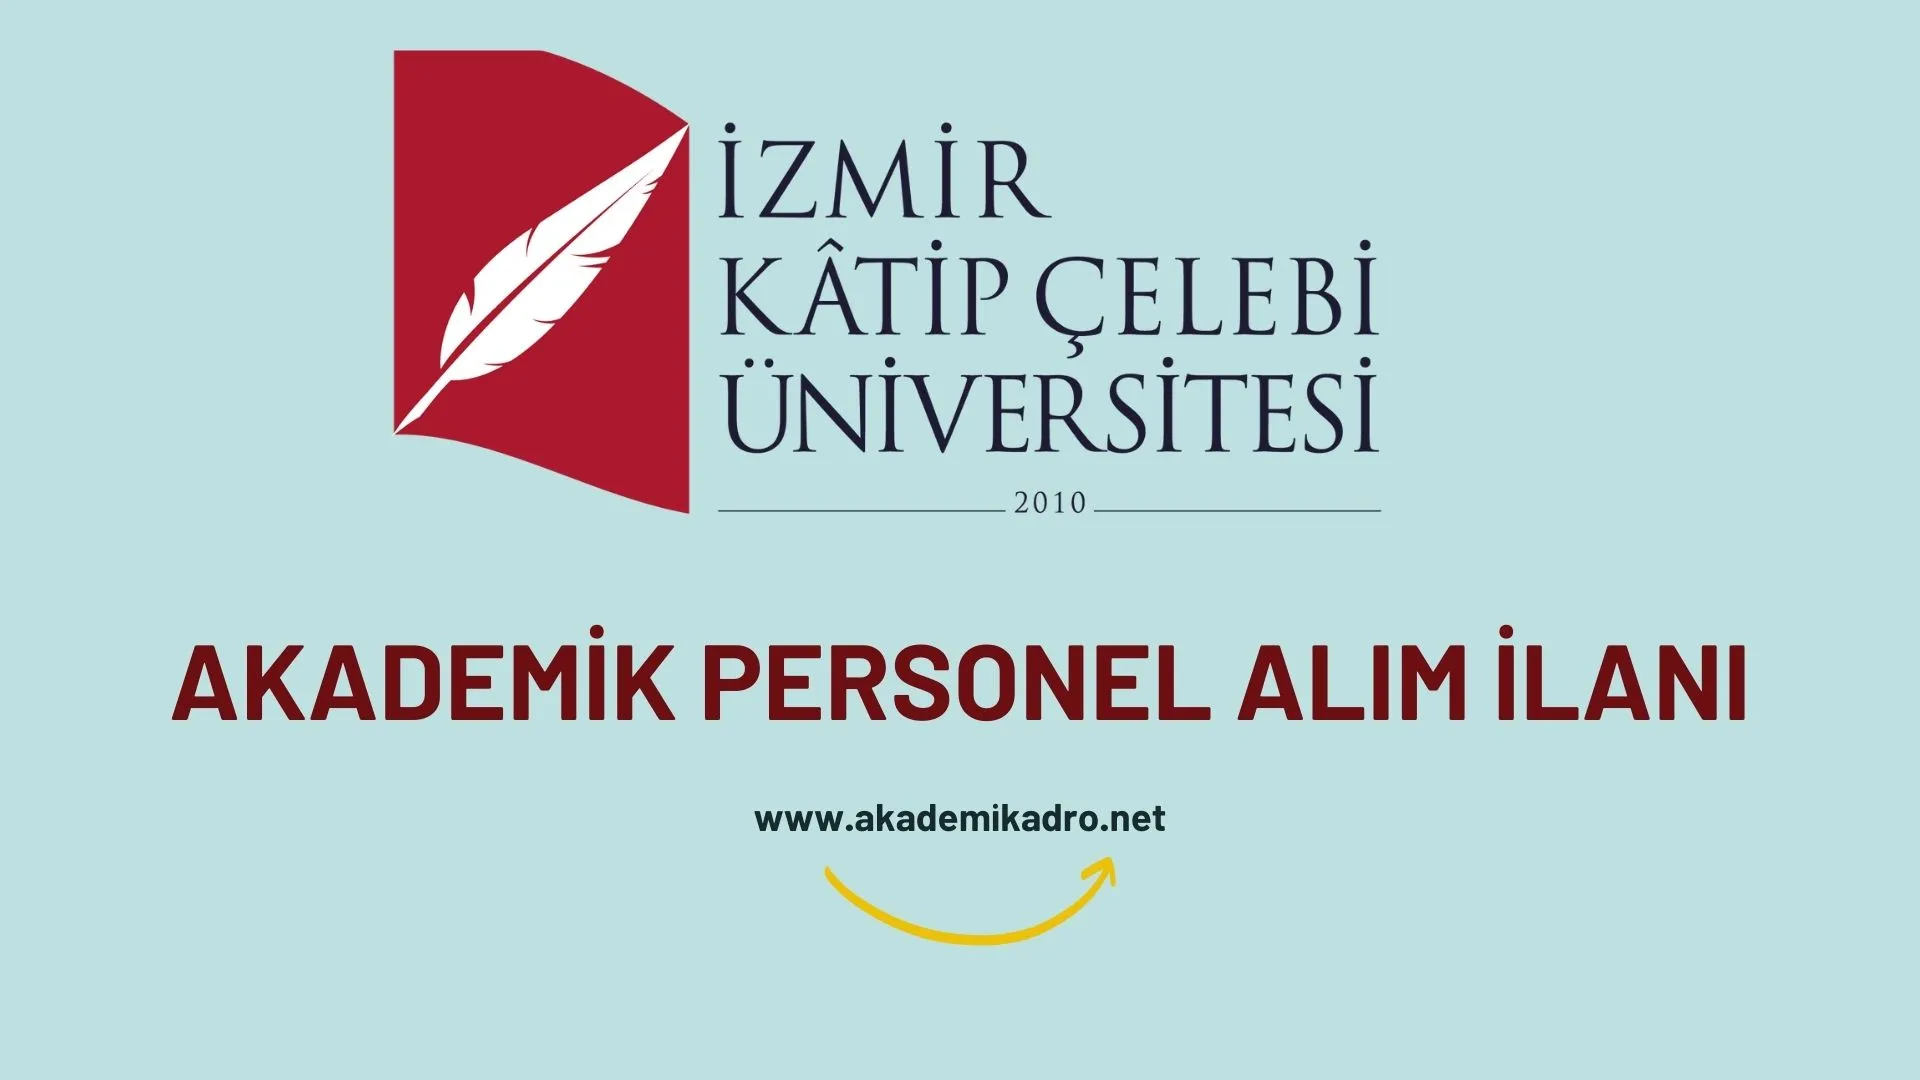 İzmir Katip Çelebi Üniversitesi 23 akademik personel alacak.